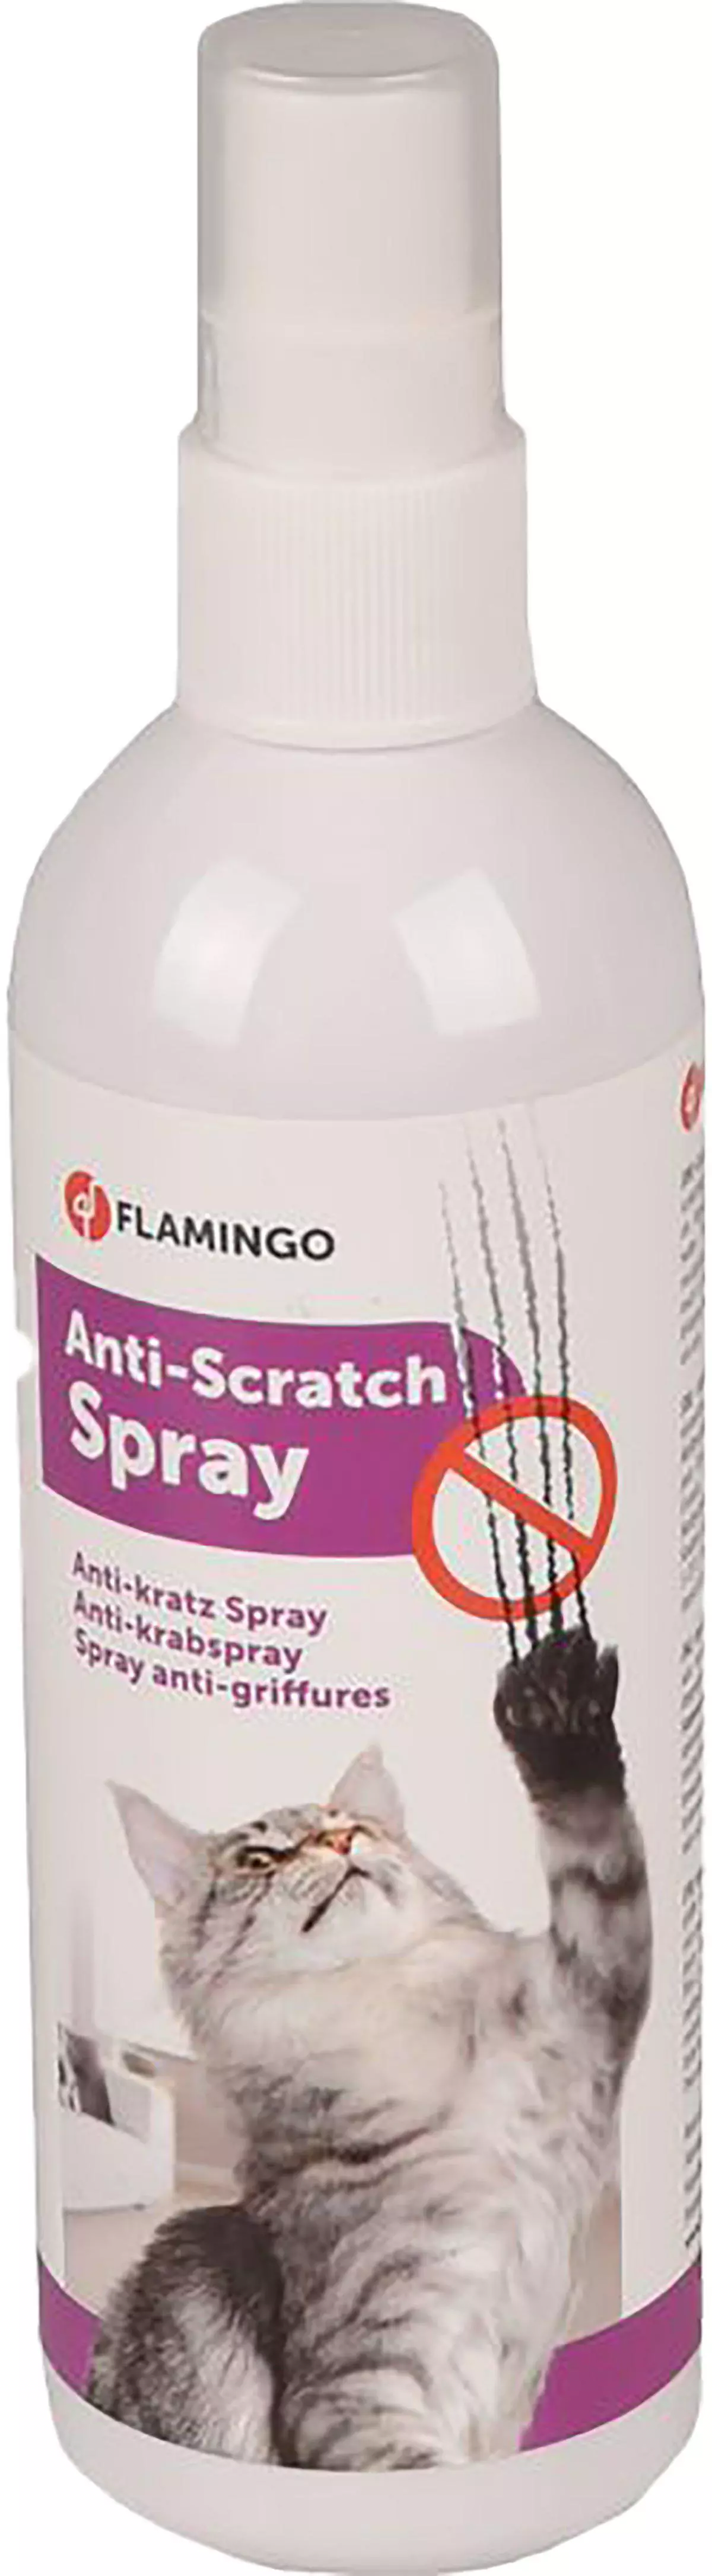 Flamingo Anti-Scratch Spray 175Ml .1000